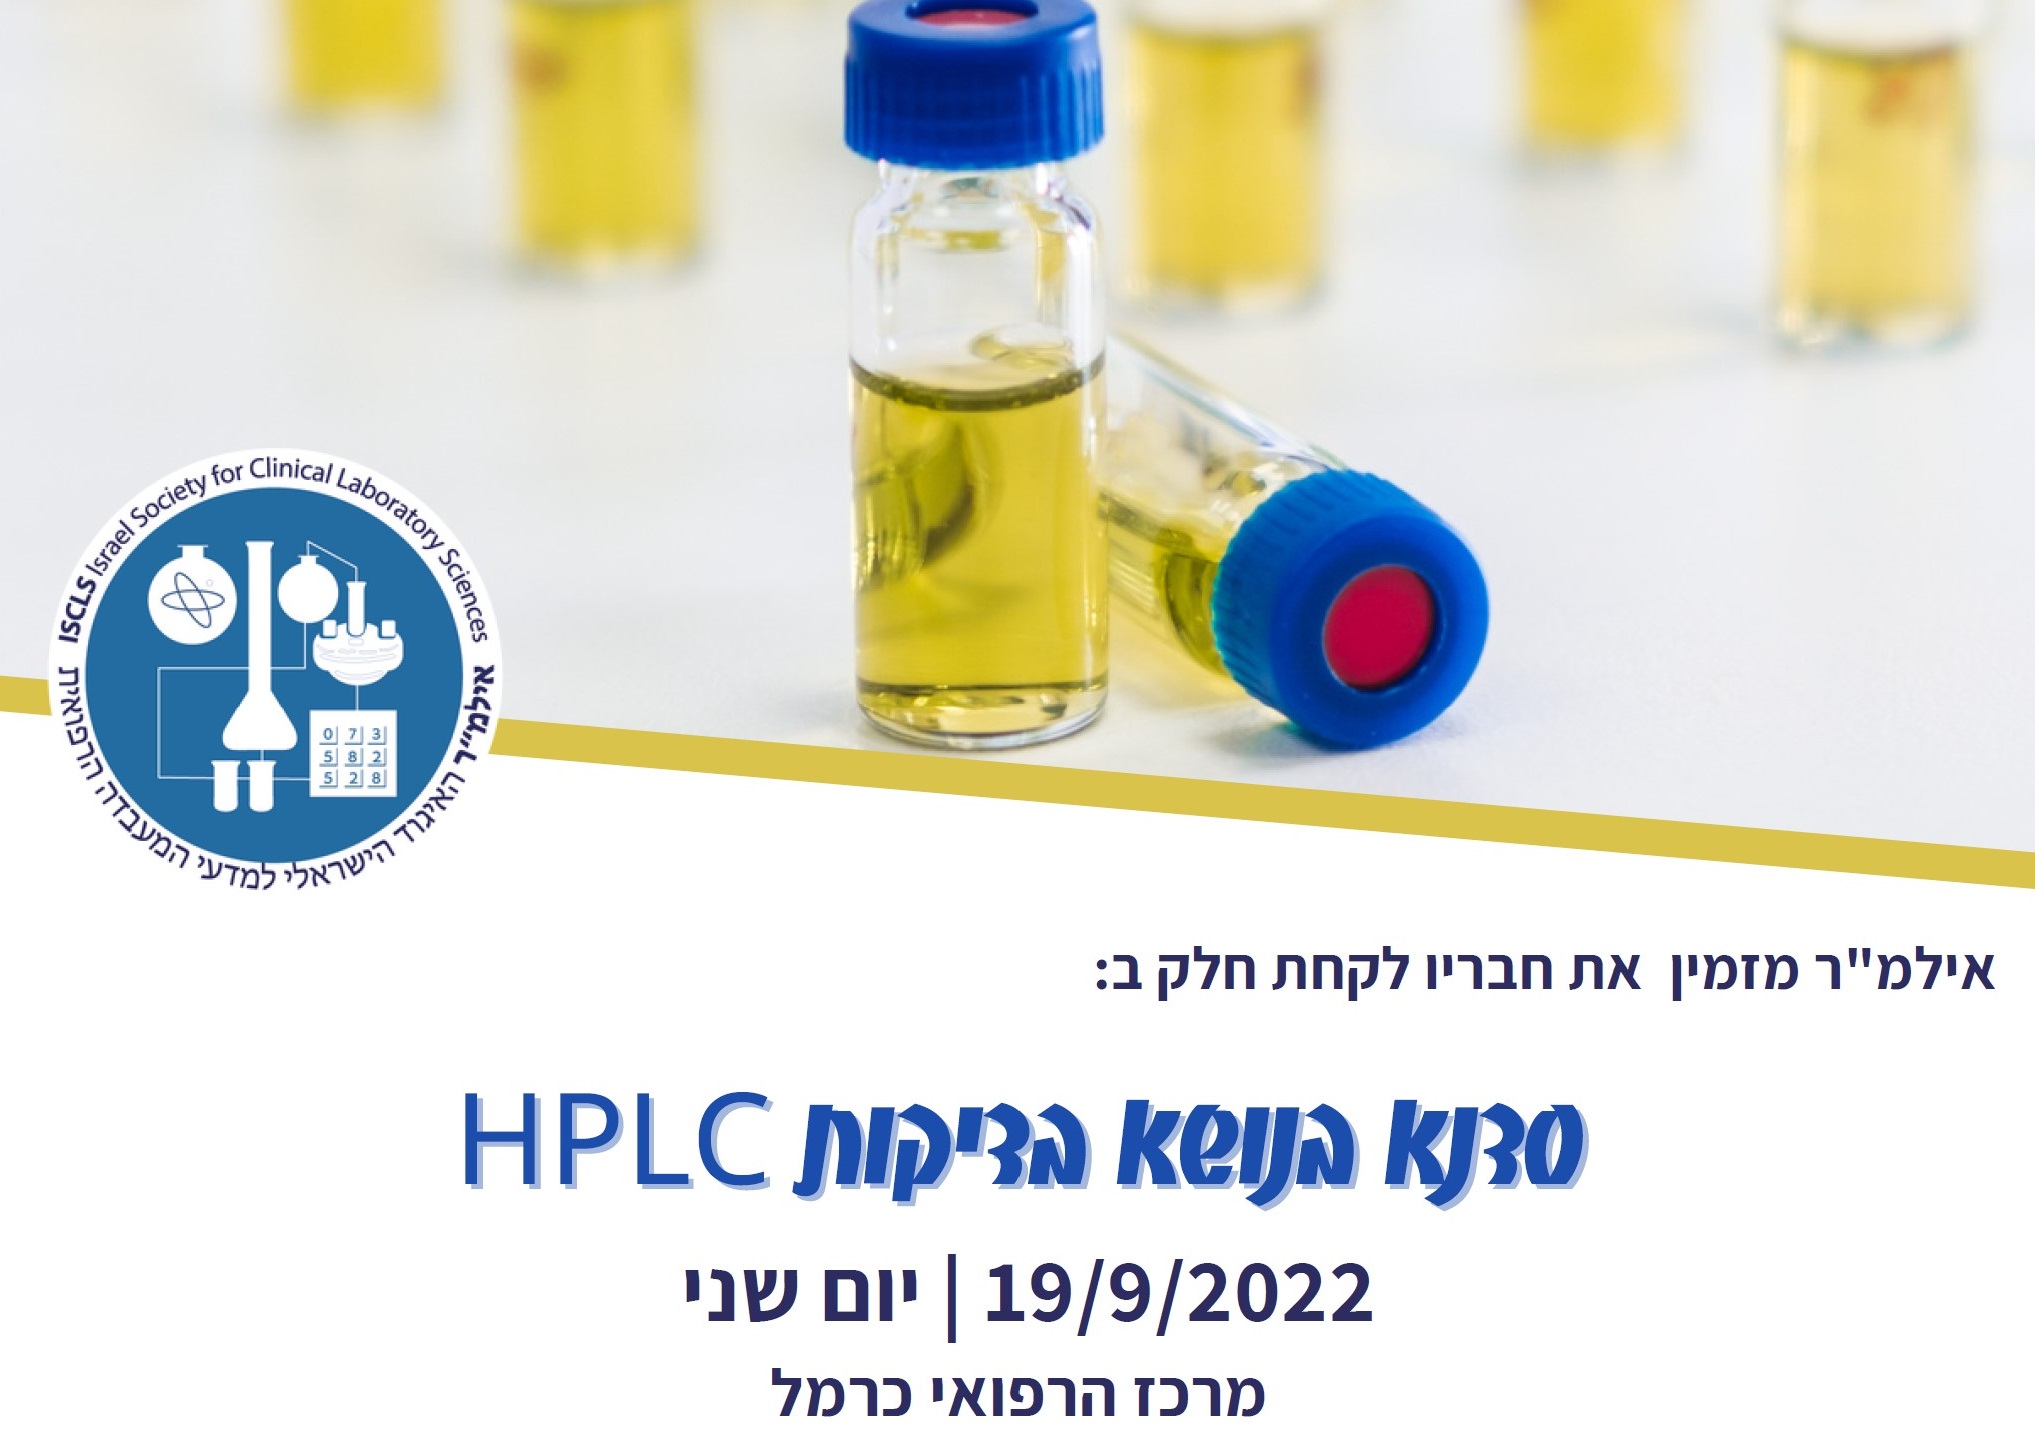 סדנא בנושא בדיקות HPLC | יום שני | 19/9/2022 | מרכז הרפואי כרמל, חיפה